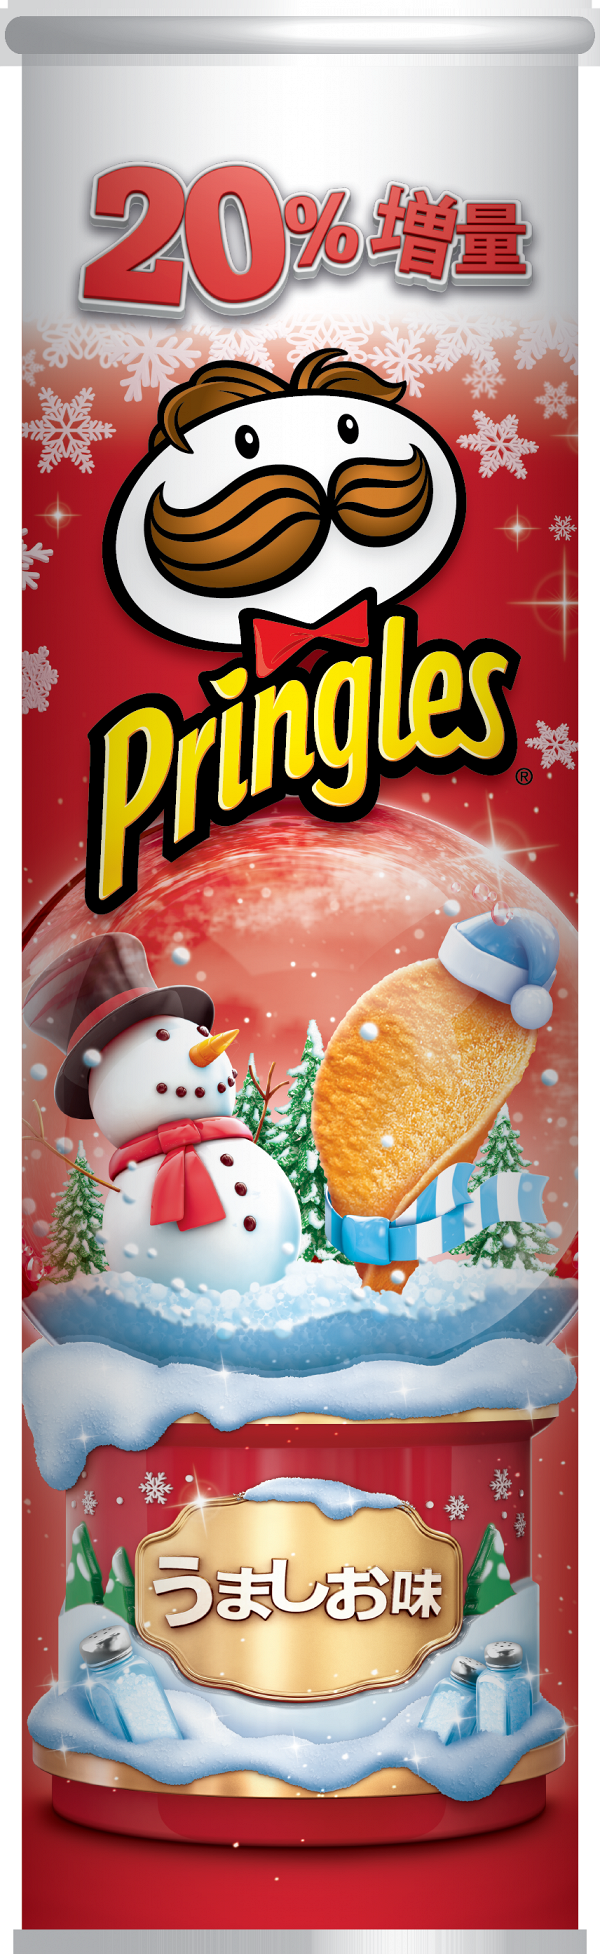 【聖誕禮物2018】Pringles品客推聖誕期間限定煙燻芝士味薯片　薯片增量20%